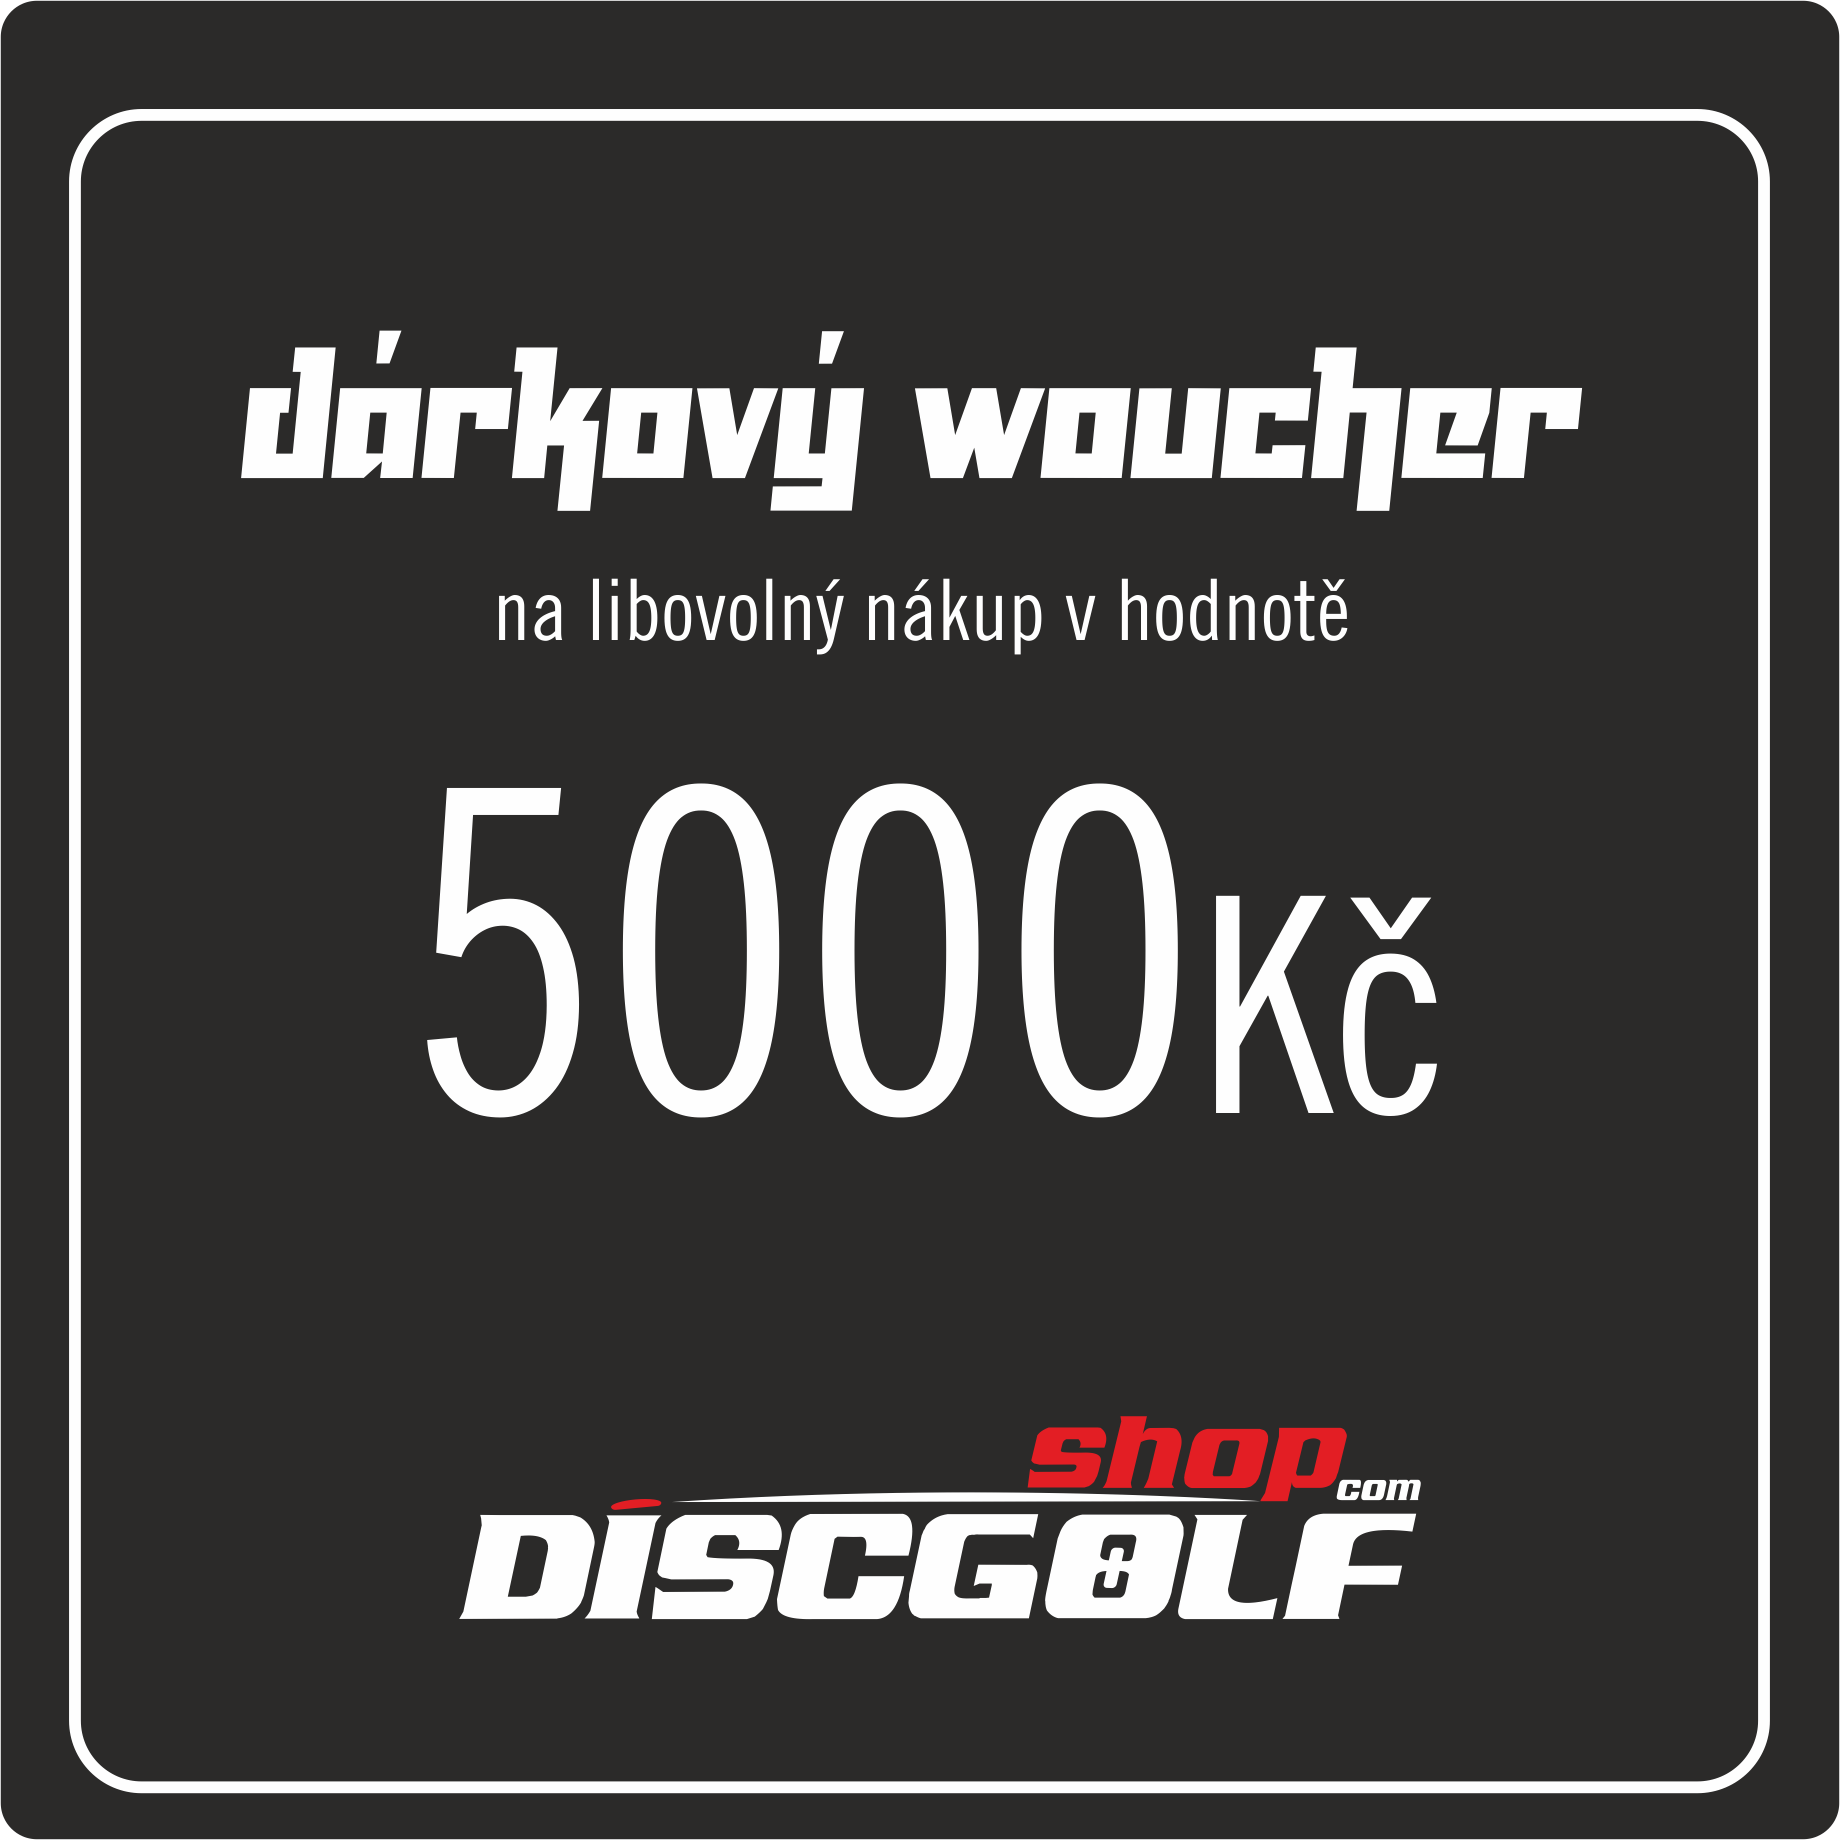    Dárkový woucher- kupon 5000Kč